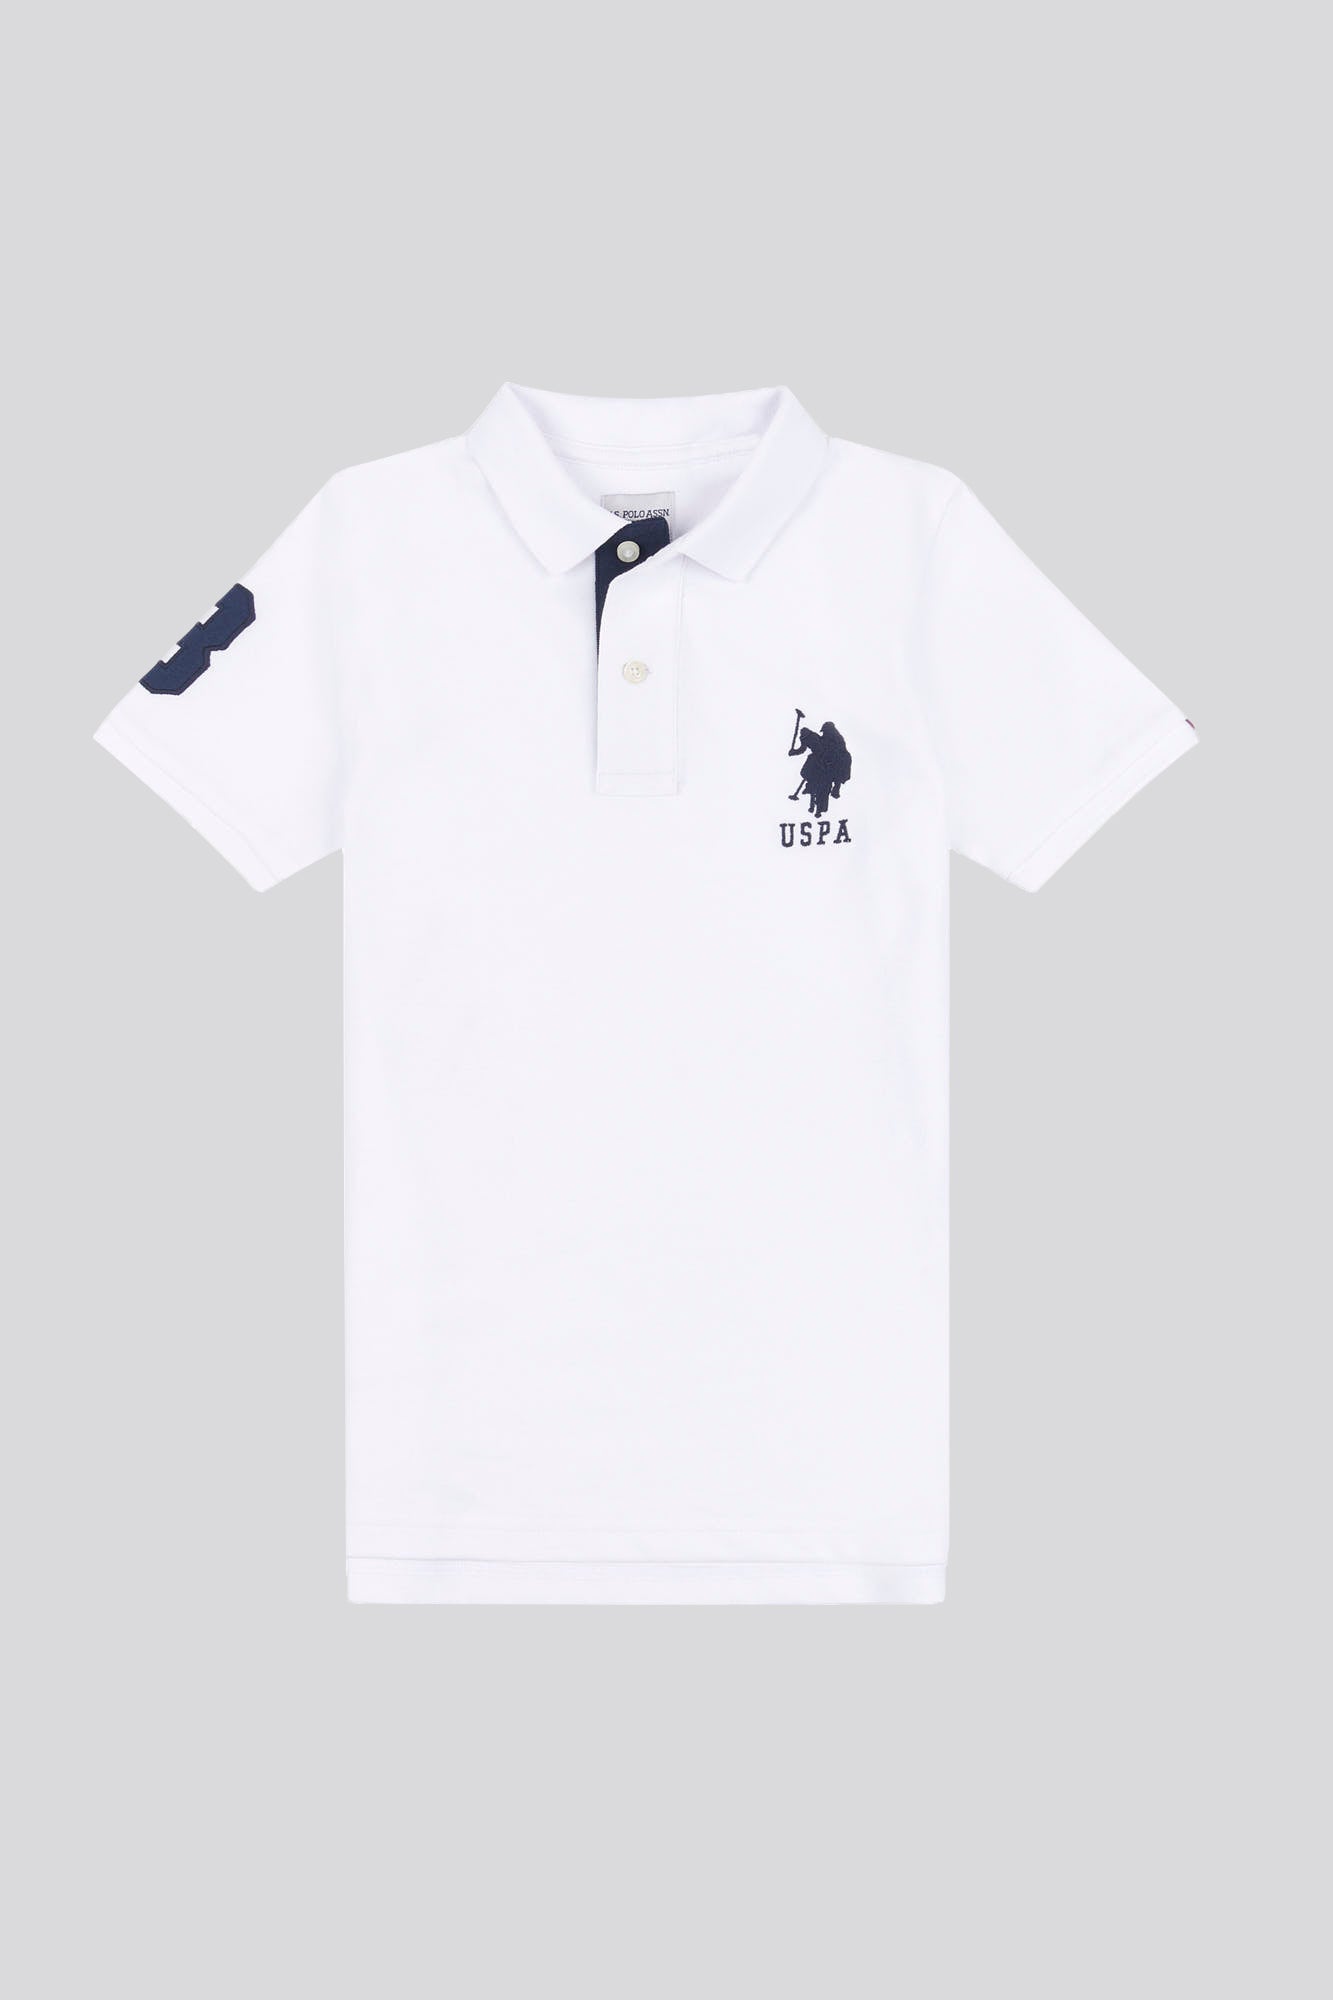 U.S. Polo Assn. Boys Player 3 Pique Polo Shirt in White / Dark Sapphire Navy DHM